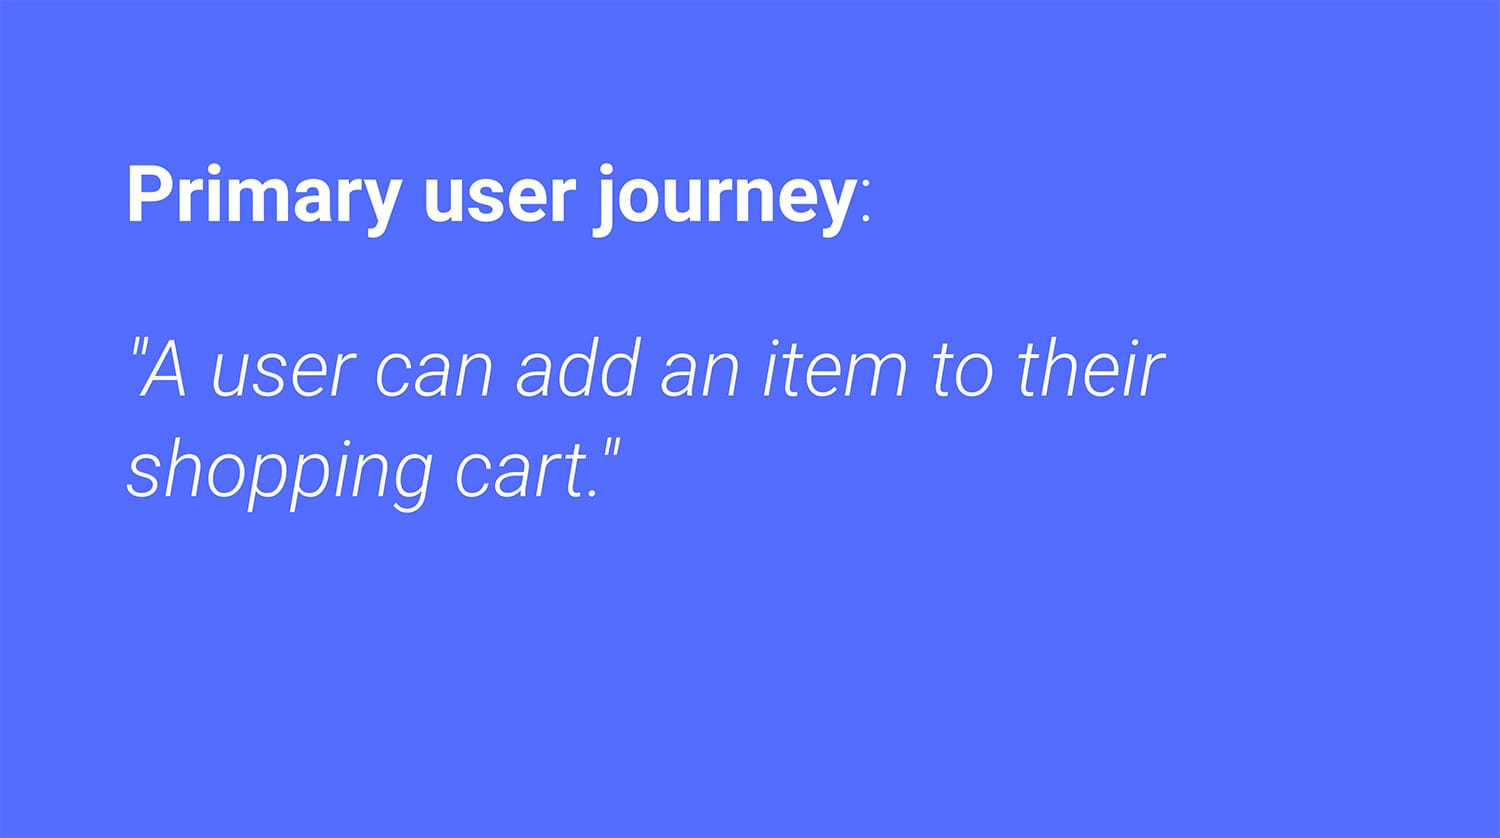 主なユーザー ジャーニー: ユーザーはショッピング カートに商品を追加できる。